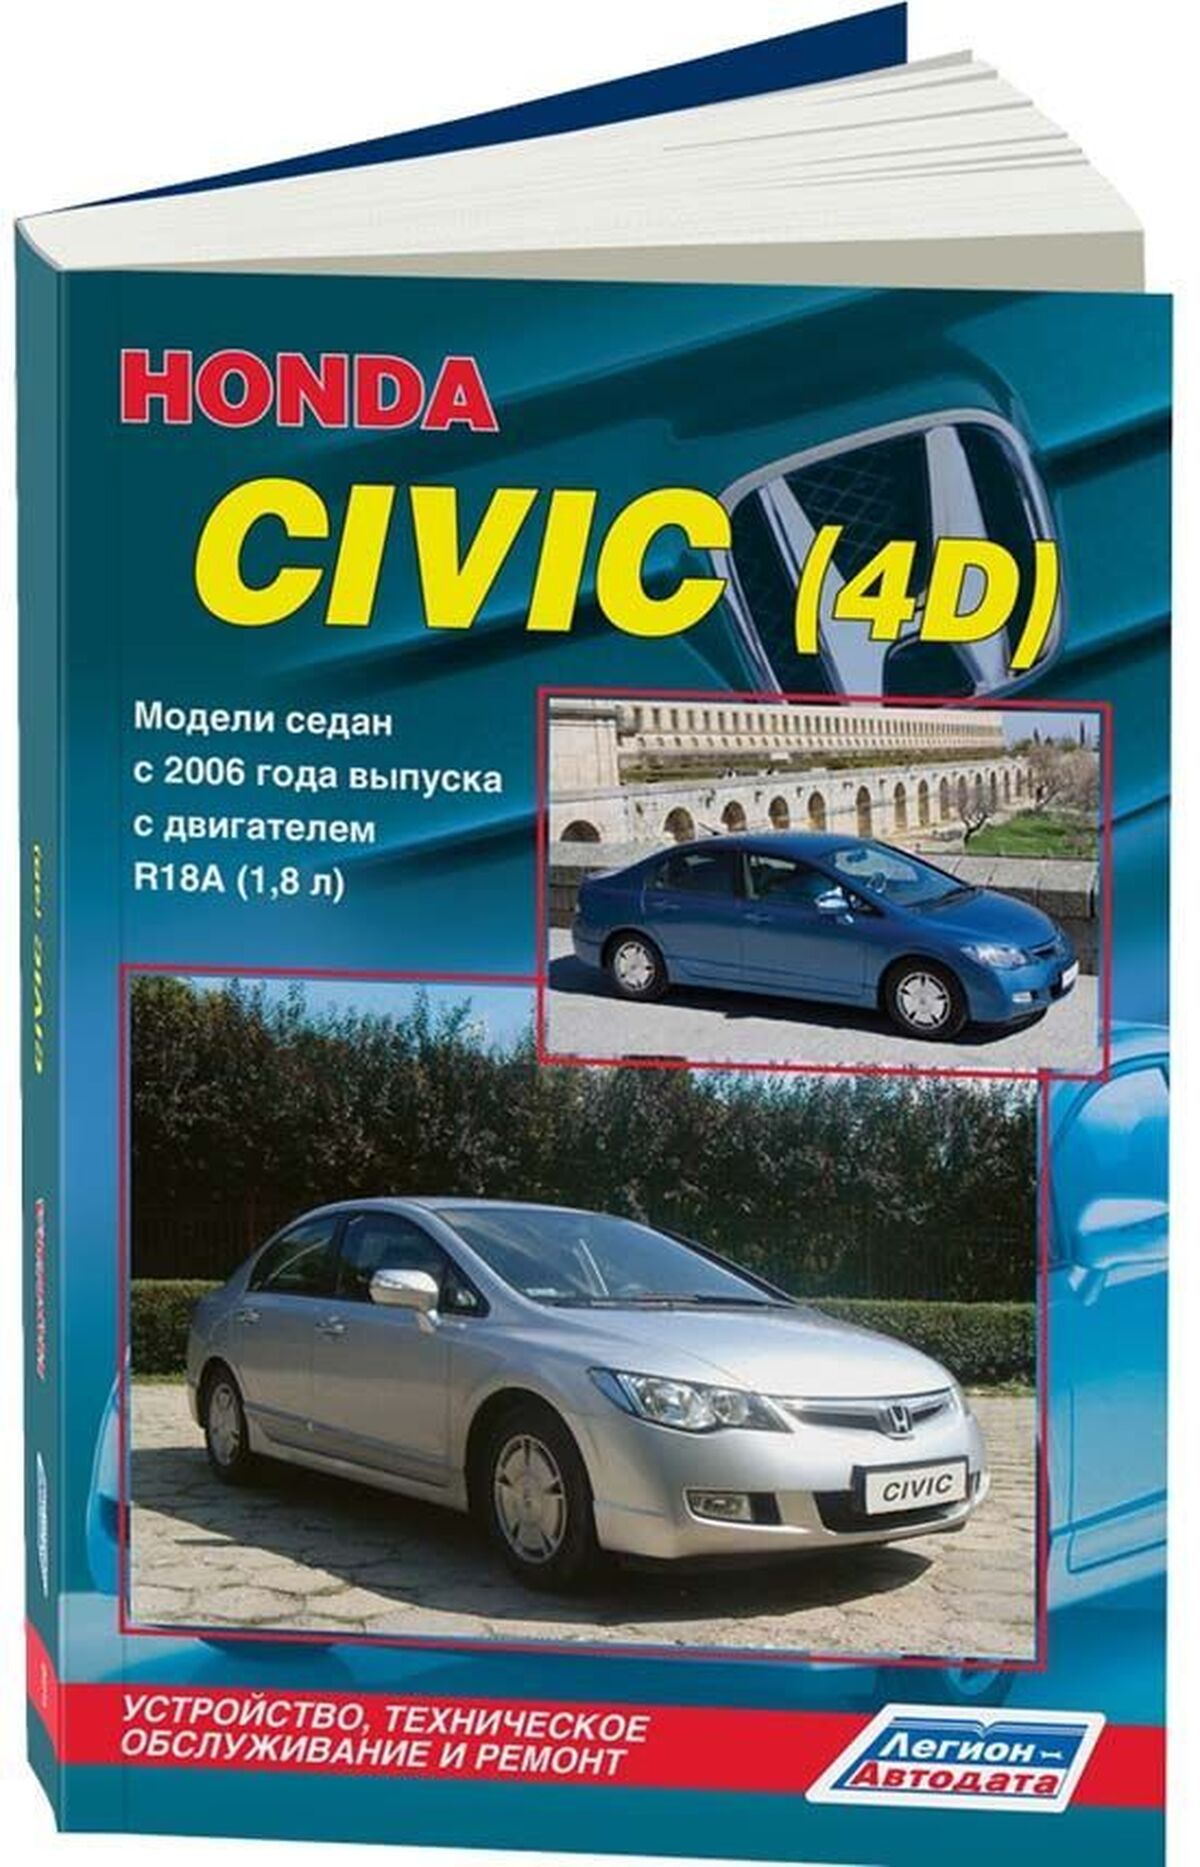 Книга: HONDA CIVIC (4D) (б) с 2006 г.в., рем., экспл., то | Легион-Aвтодата